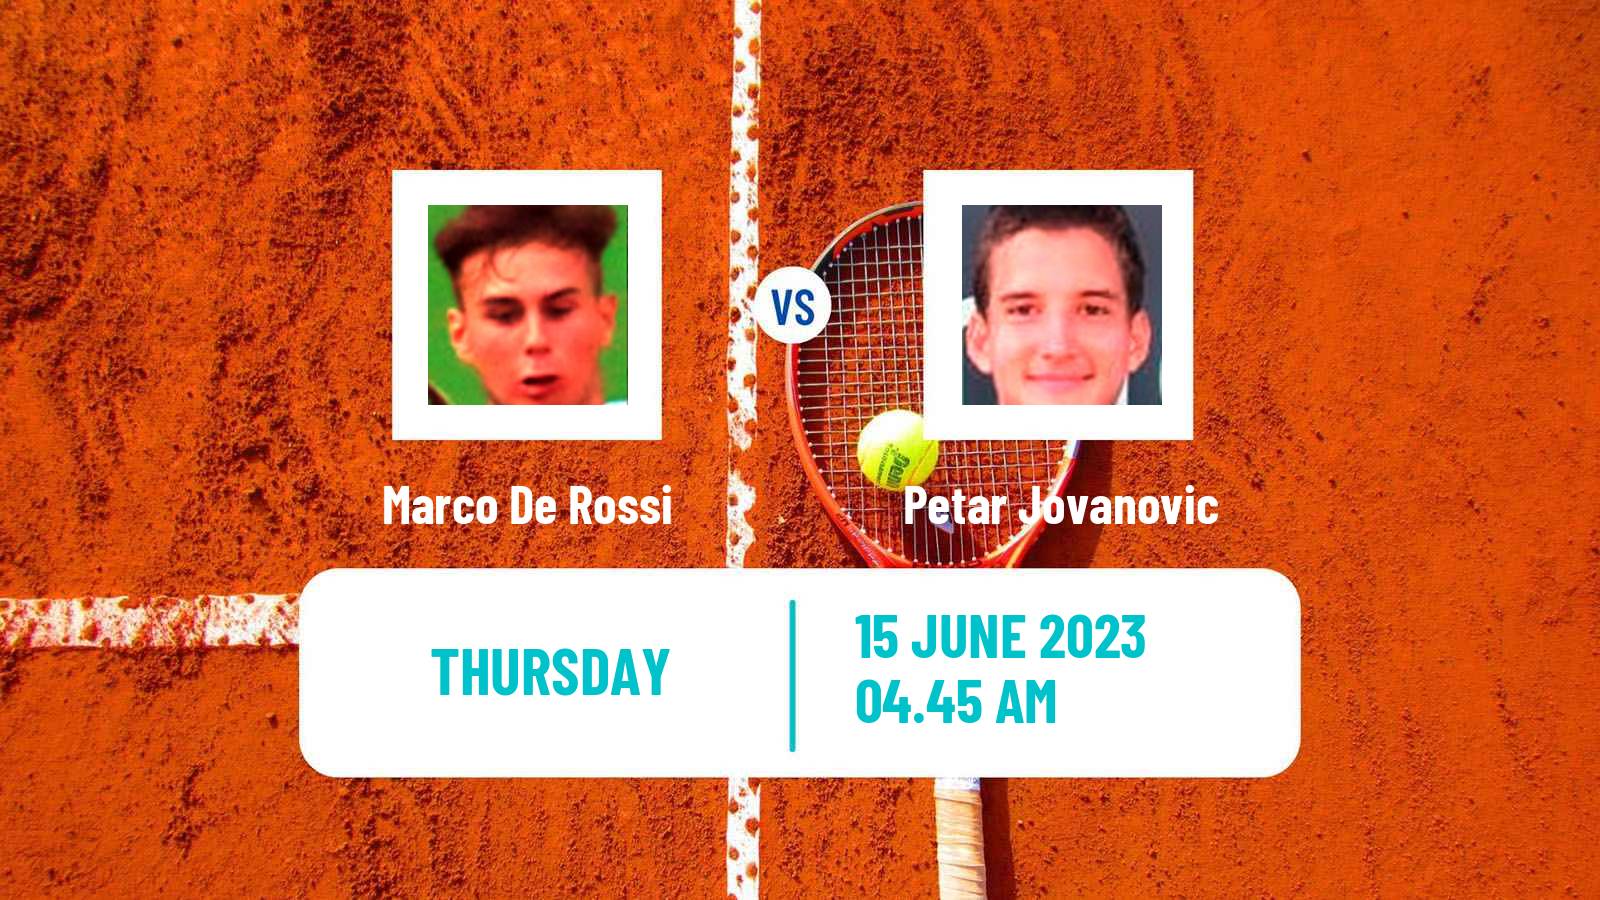 Tennis Davis Cup Group III Marco De Rossi - Petar Jovanovic